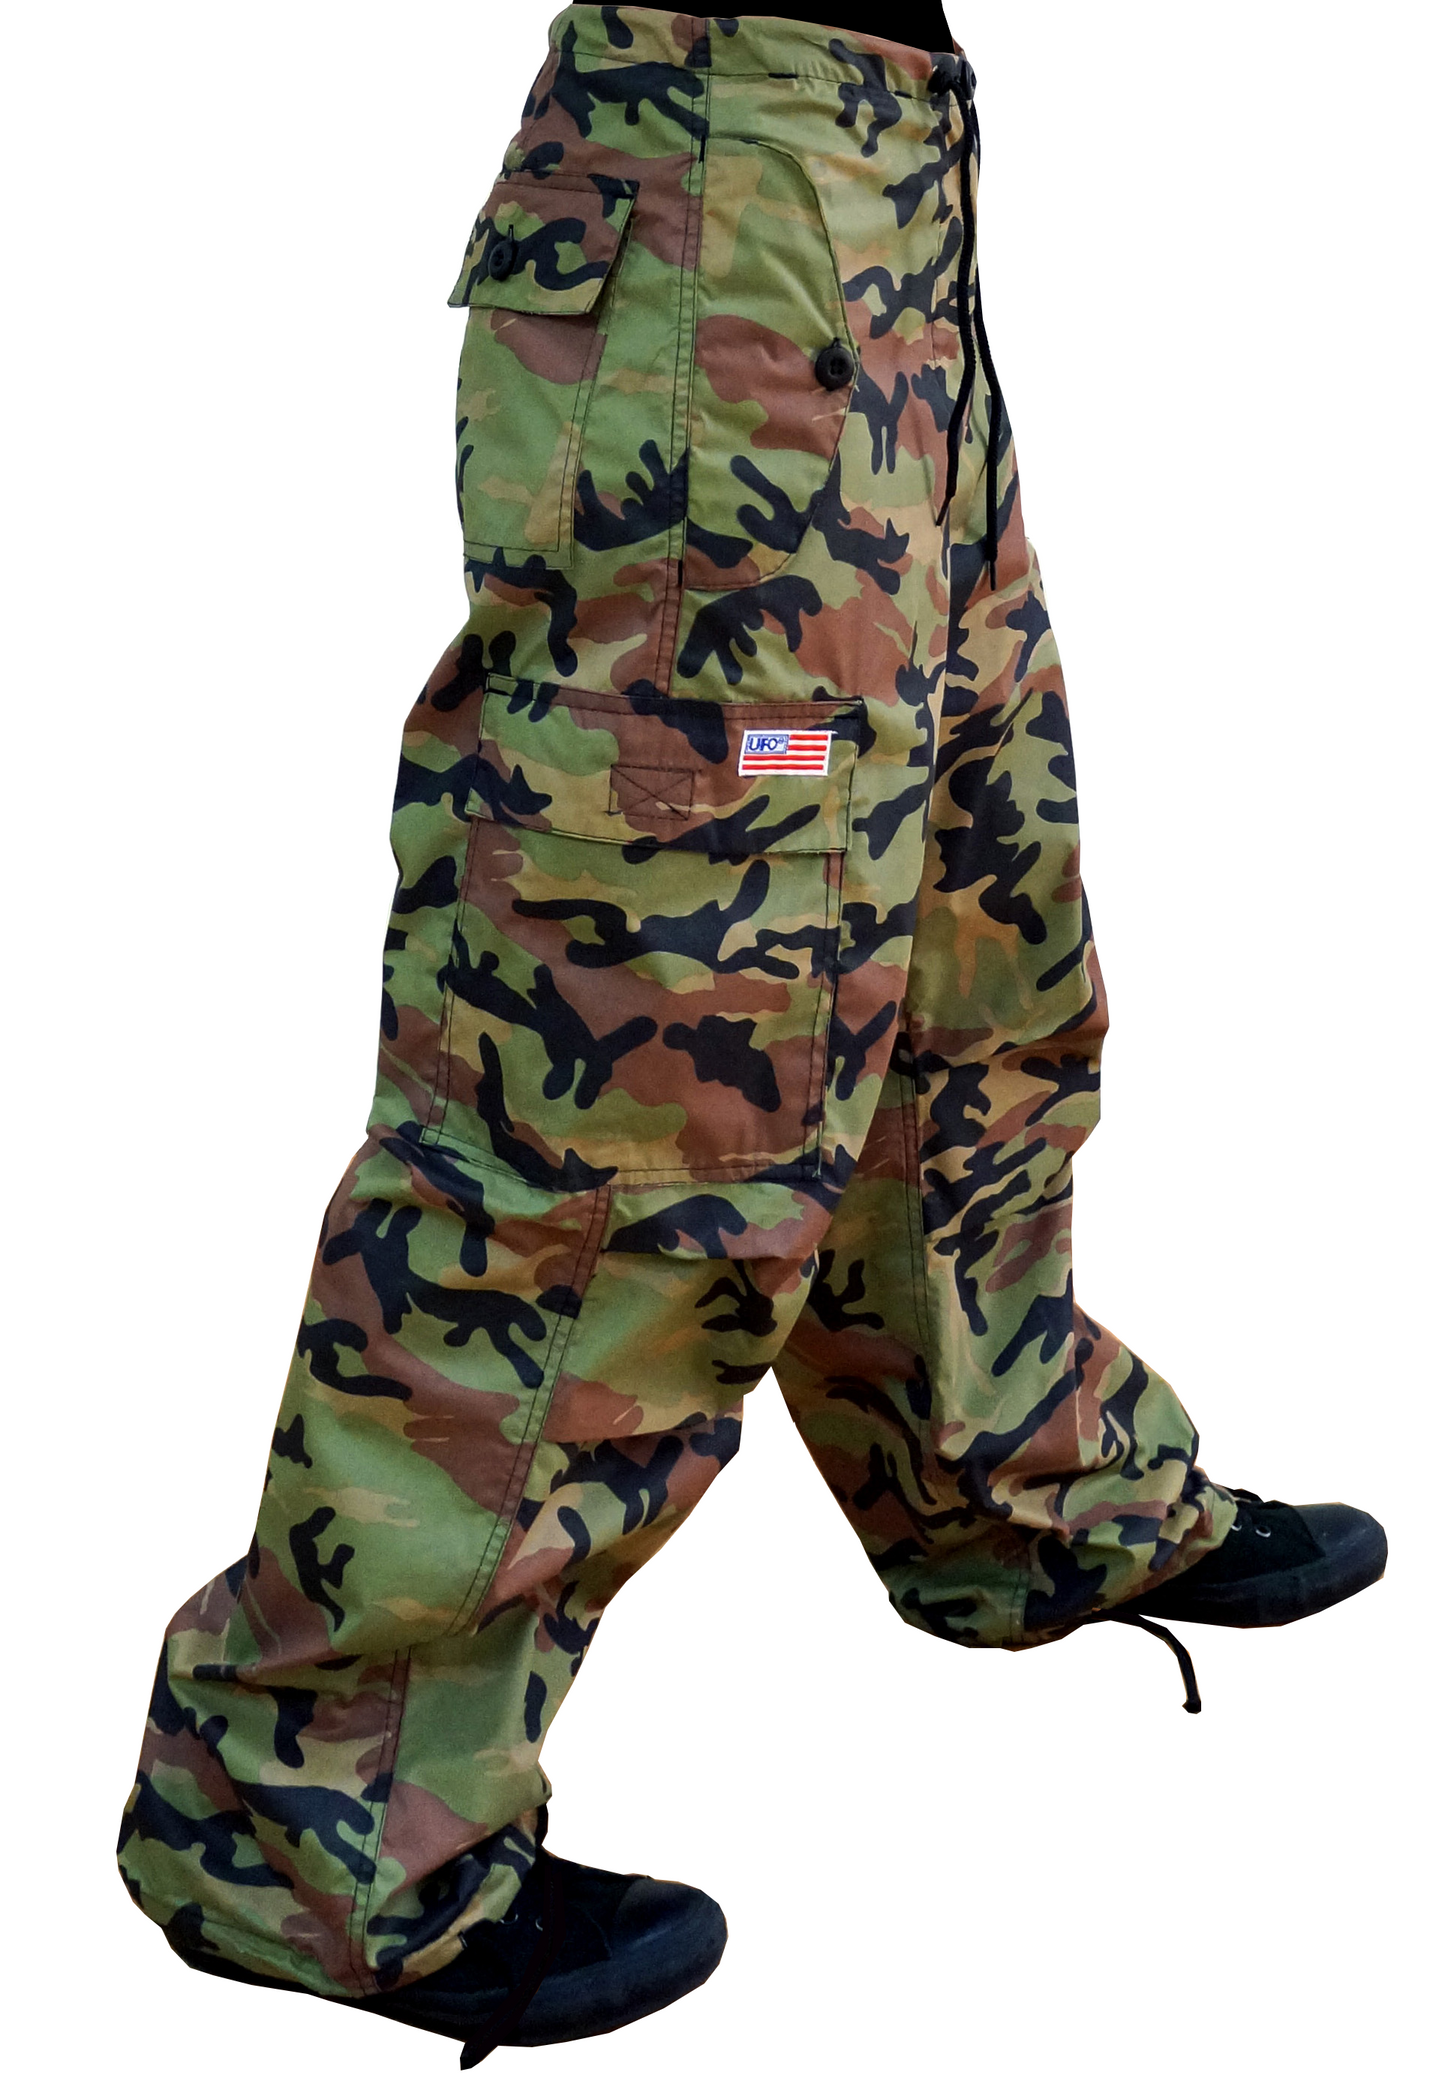 Pantalon camouflage avec poche à rabat #86725 unisexe